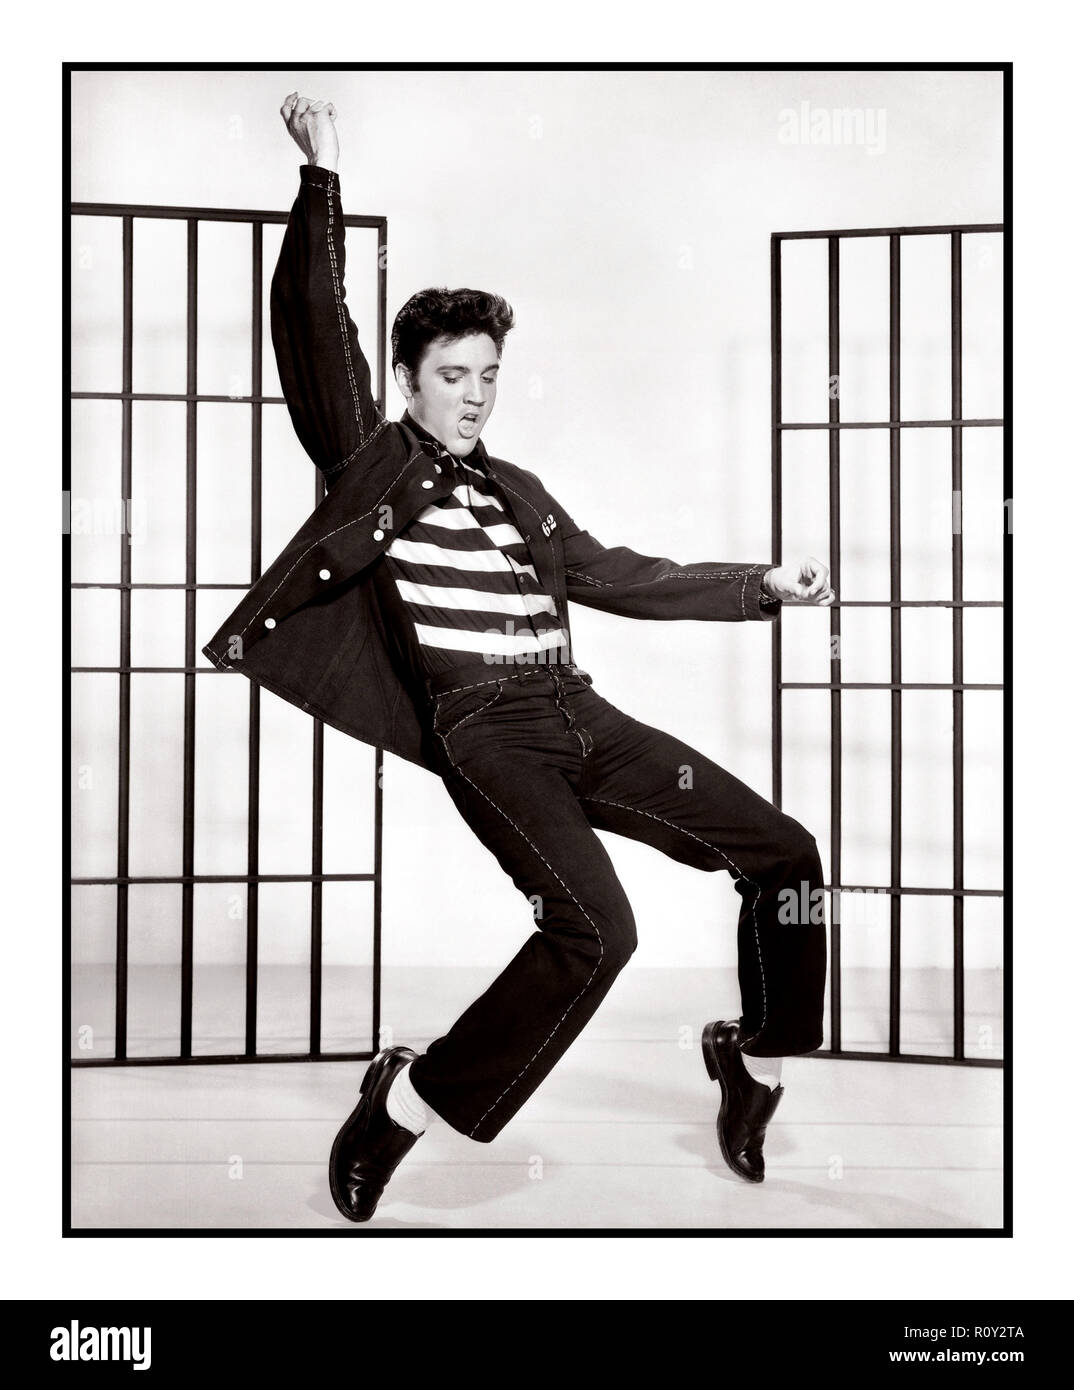 JAILHOUSE ROCK Elvis Presley Filmstill aus dem ikonischen bahnbrechenden Film & Song 'Jailhouse Rock' 1957 der Liedtext beginnt... 'Der Wärter warf eine Party im Bezirksgefängnis' Stockfoto